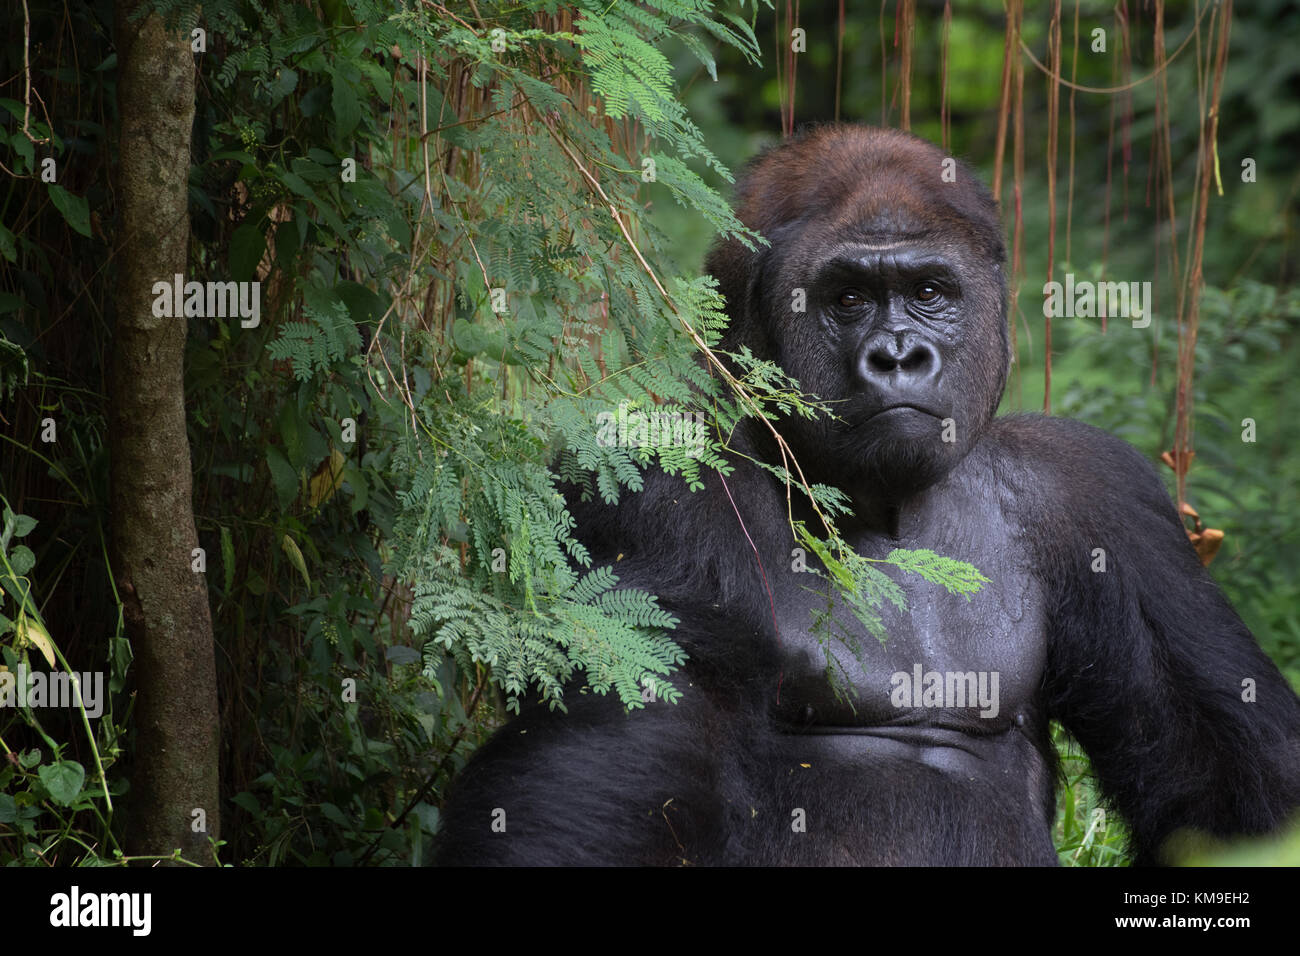 Portrait of a silverback gorilla in the jungle, Rwanda Stock Photo